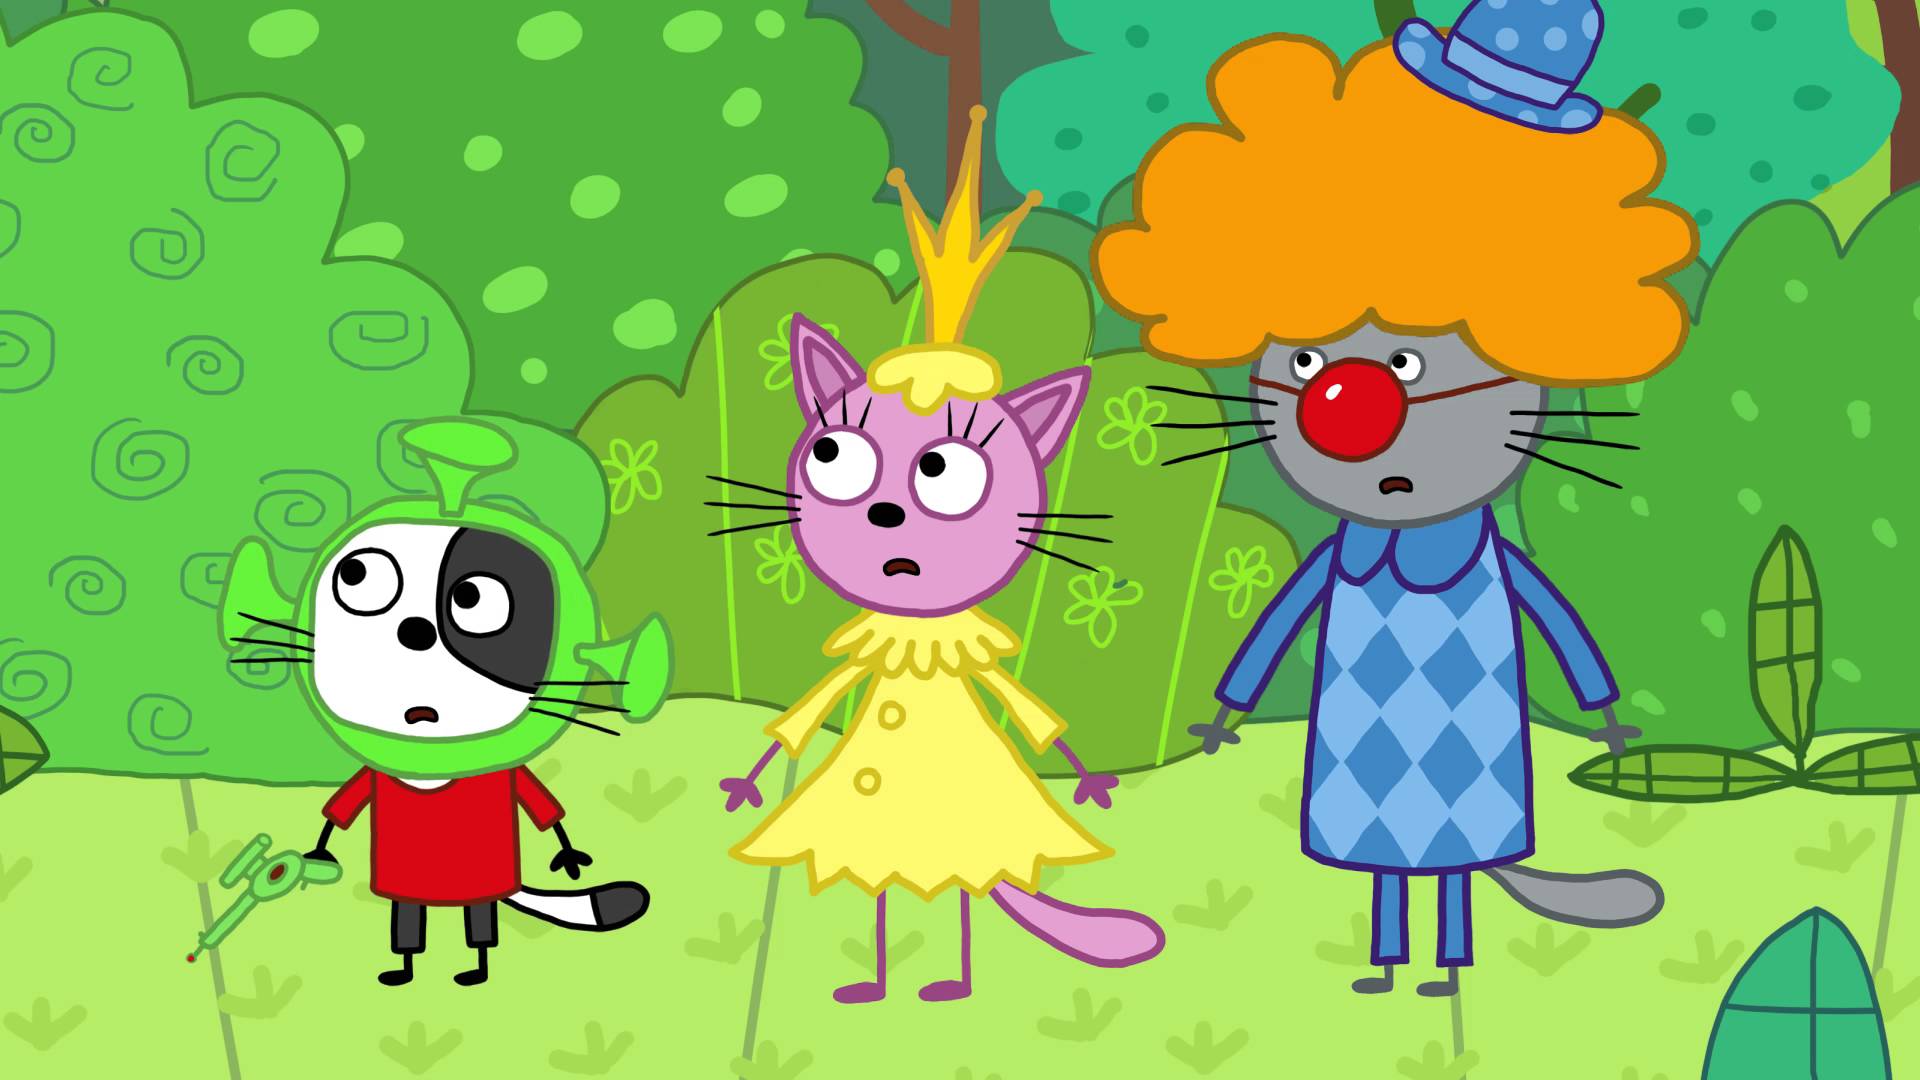 3 кота 2. Три кота киностудия 142 серия. Три кота танец Миу Миу. Лапочка мультик три кота. Три кота персонажи Сажик.